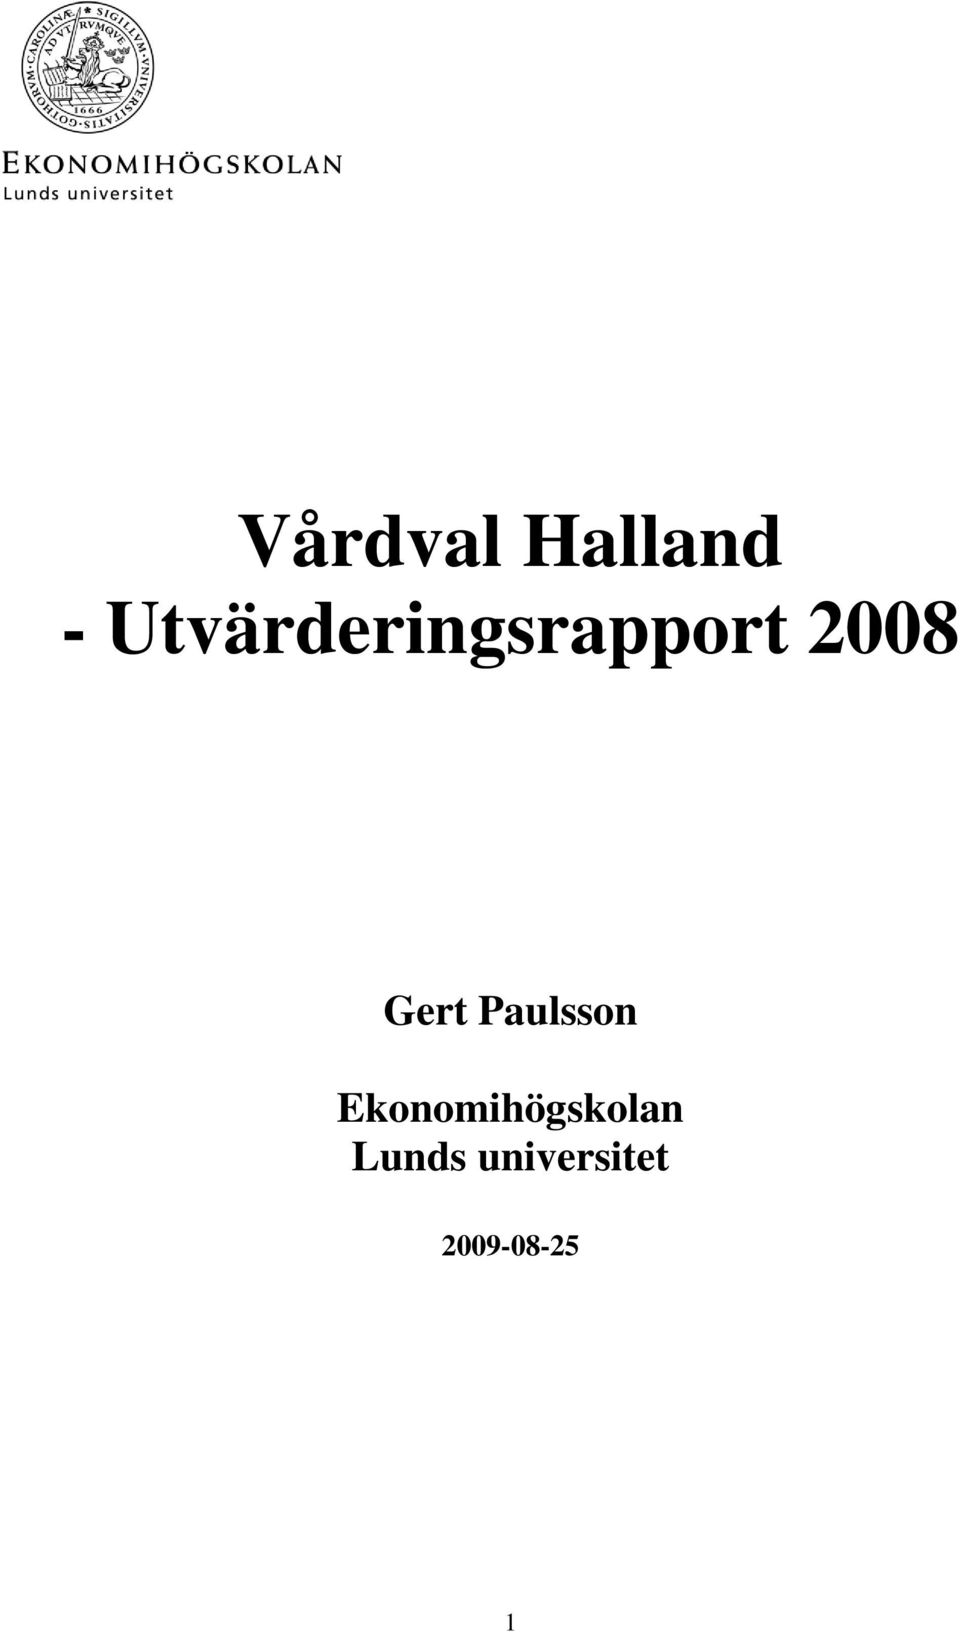 Gert Paulsson